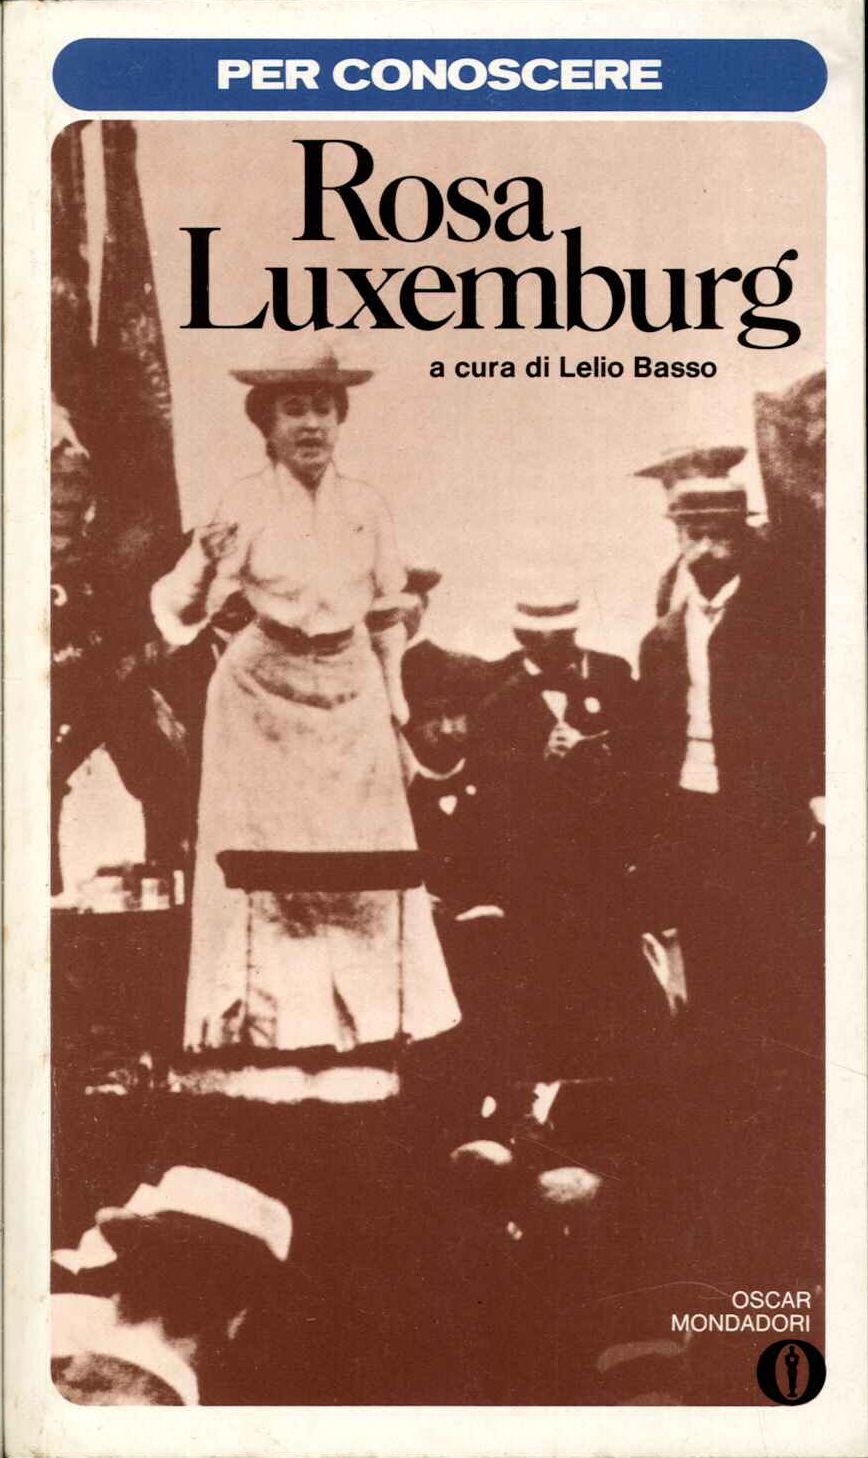 Per conoscere Rosa Luxemburg